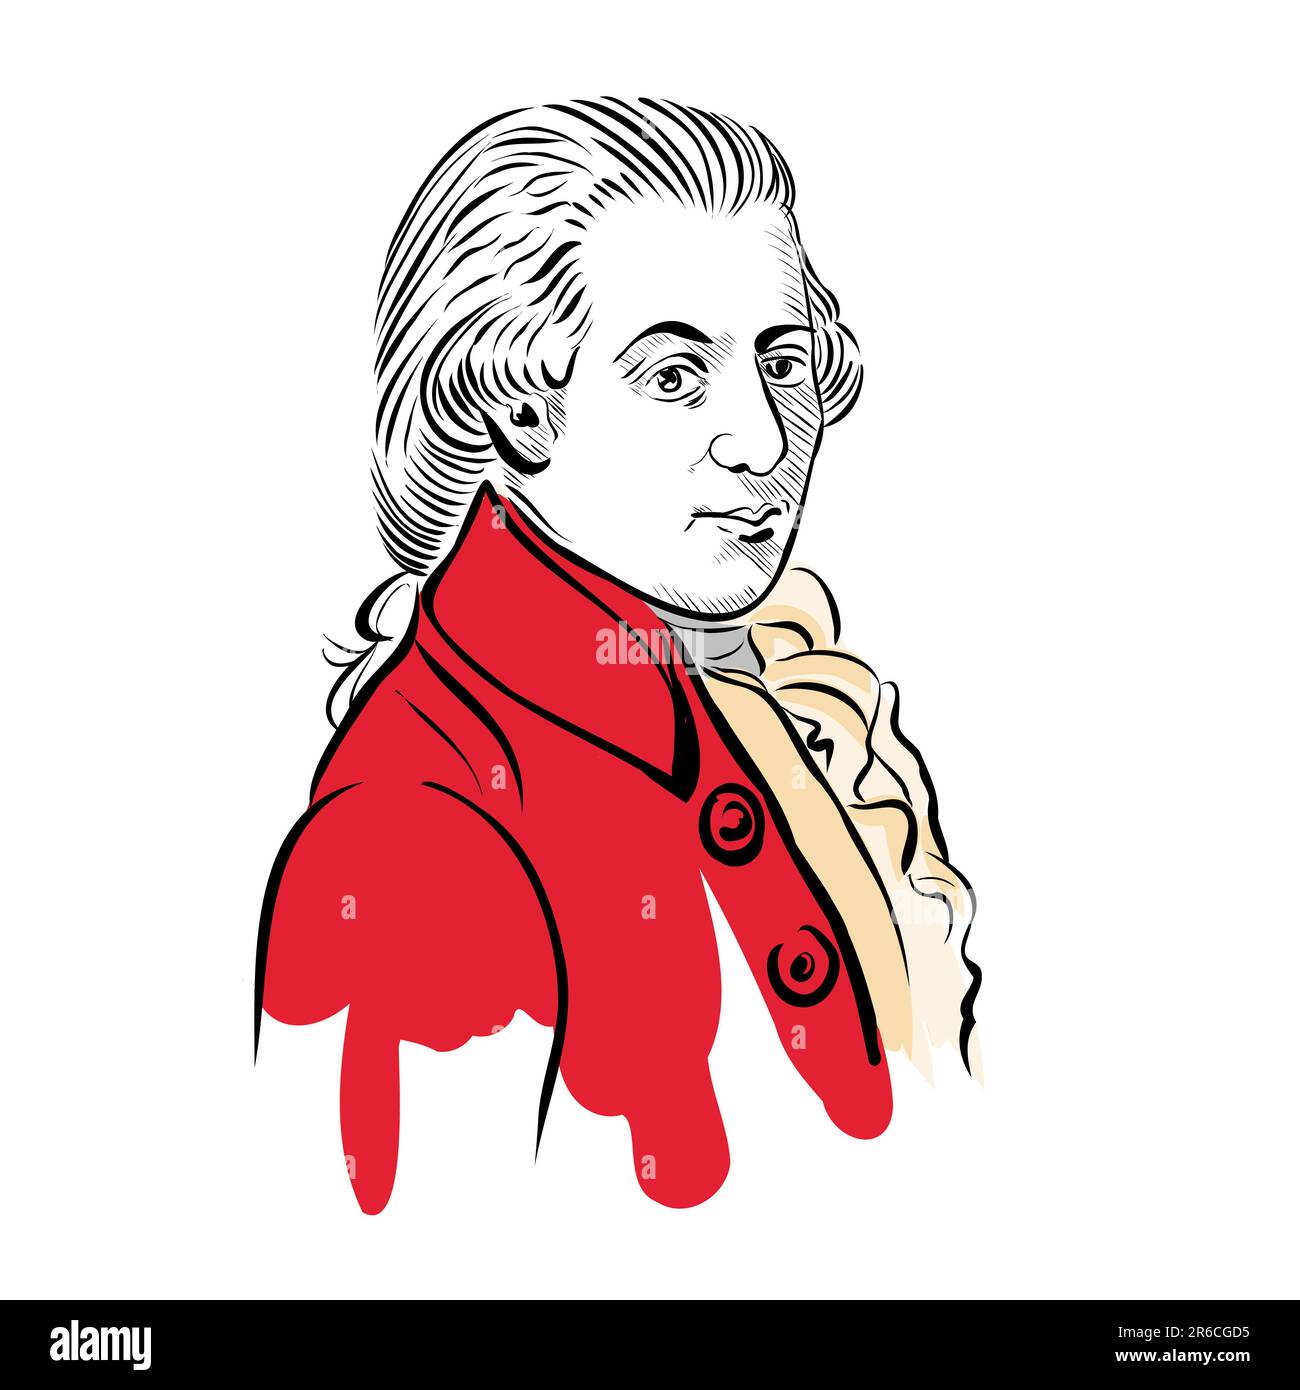 Mozart, Wolfgang Amadeus, image portrait, illustration vectorielle, dessin à la main noir et blanc isolé sur fond blanc Banque D'Images